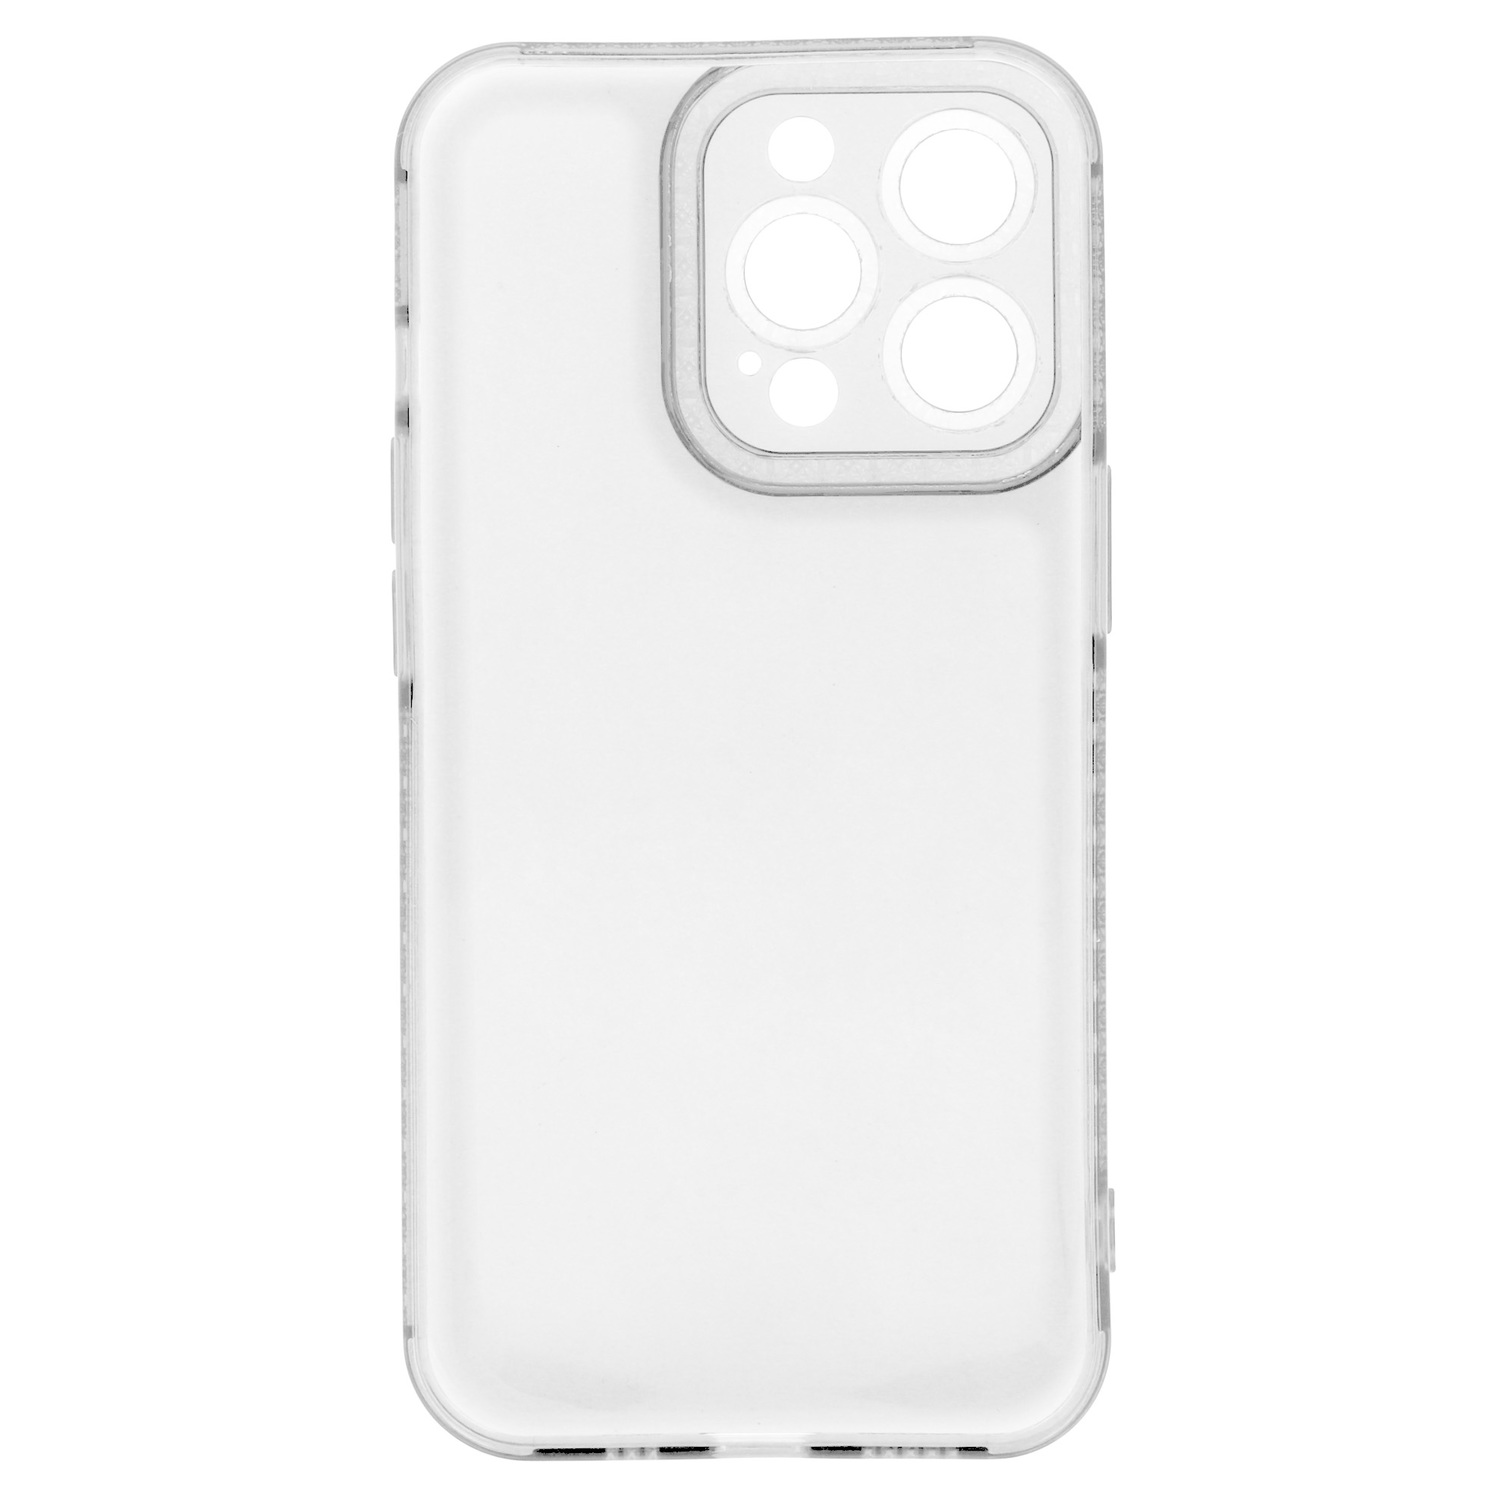 Pokrowiec etui silikonowe Crystal Diamond Case przezroczyste APPLE iPhone 12 Pro / 5